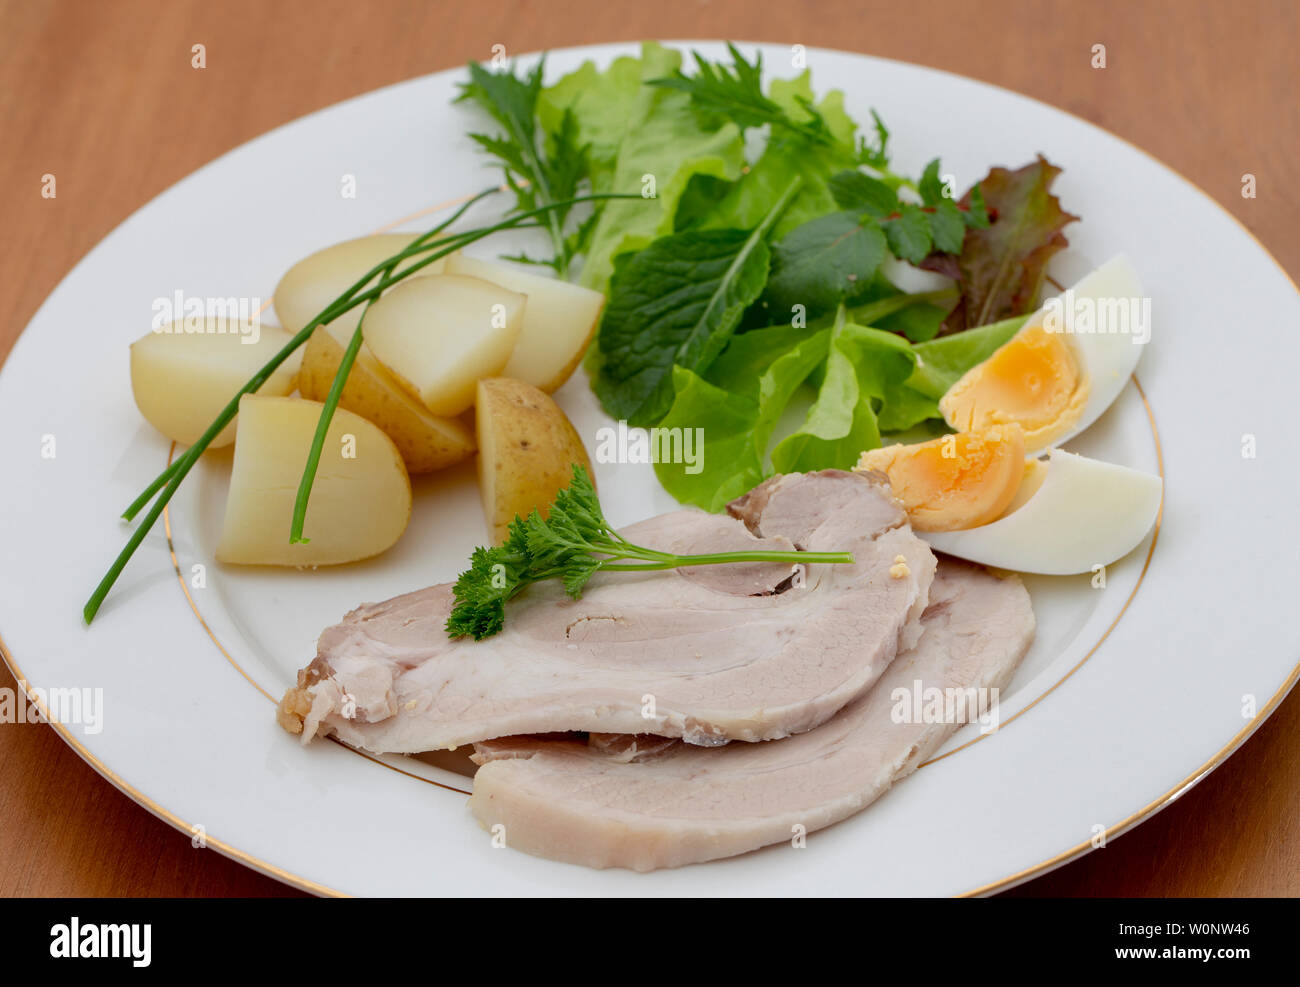 A freddo di maiale affettato cena con insalata di patate, patate e uovo sodo Foto Stock